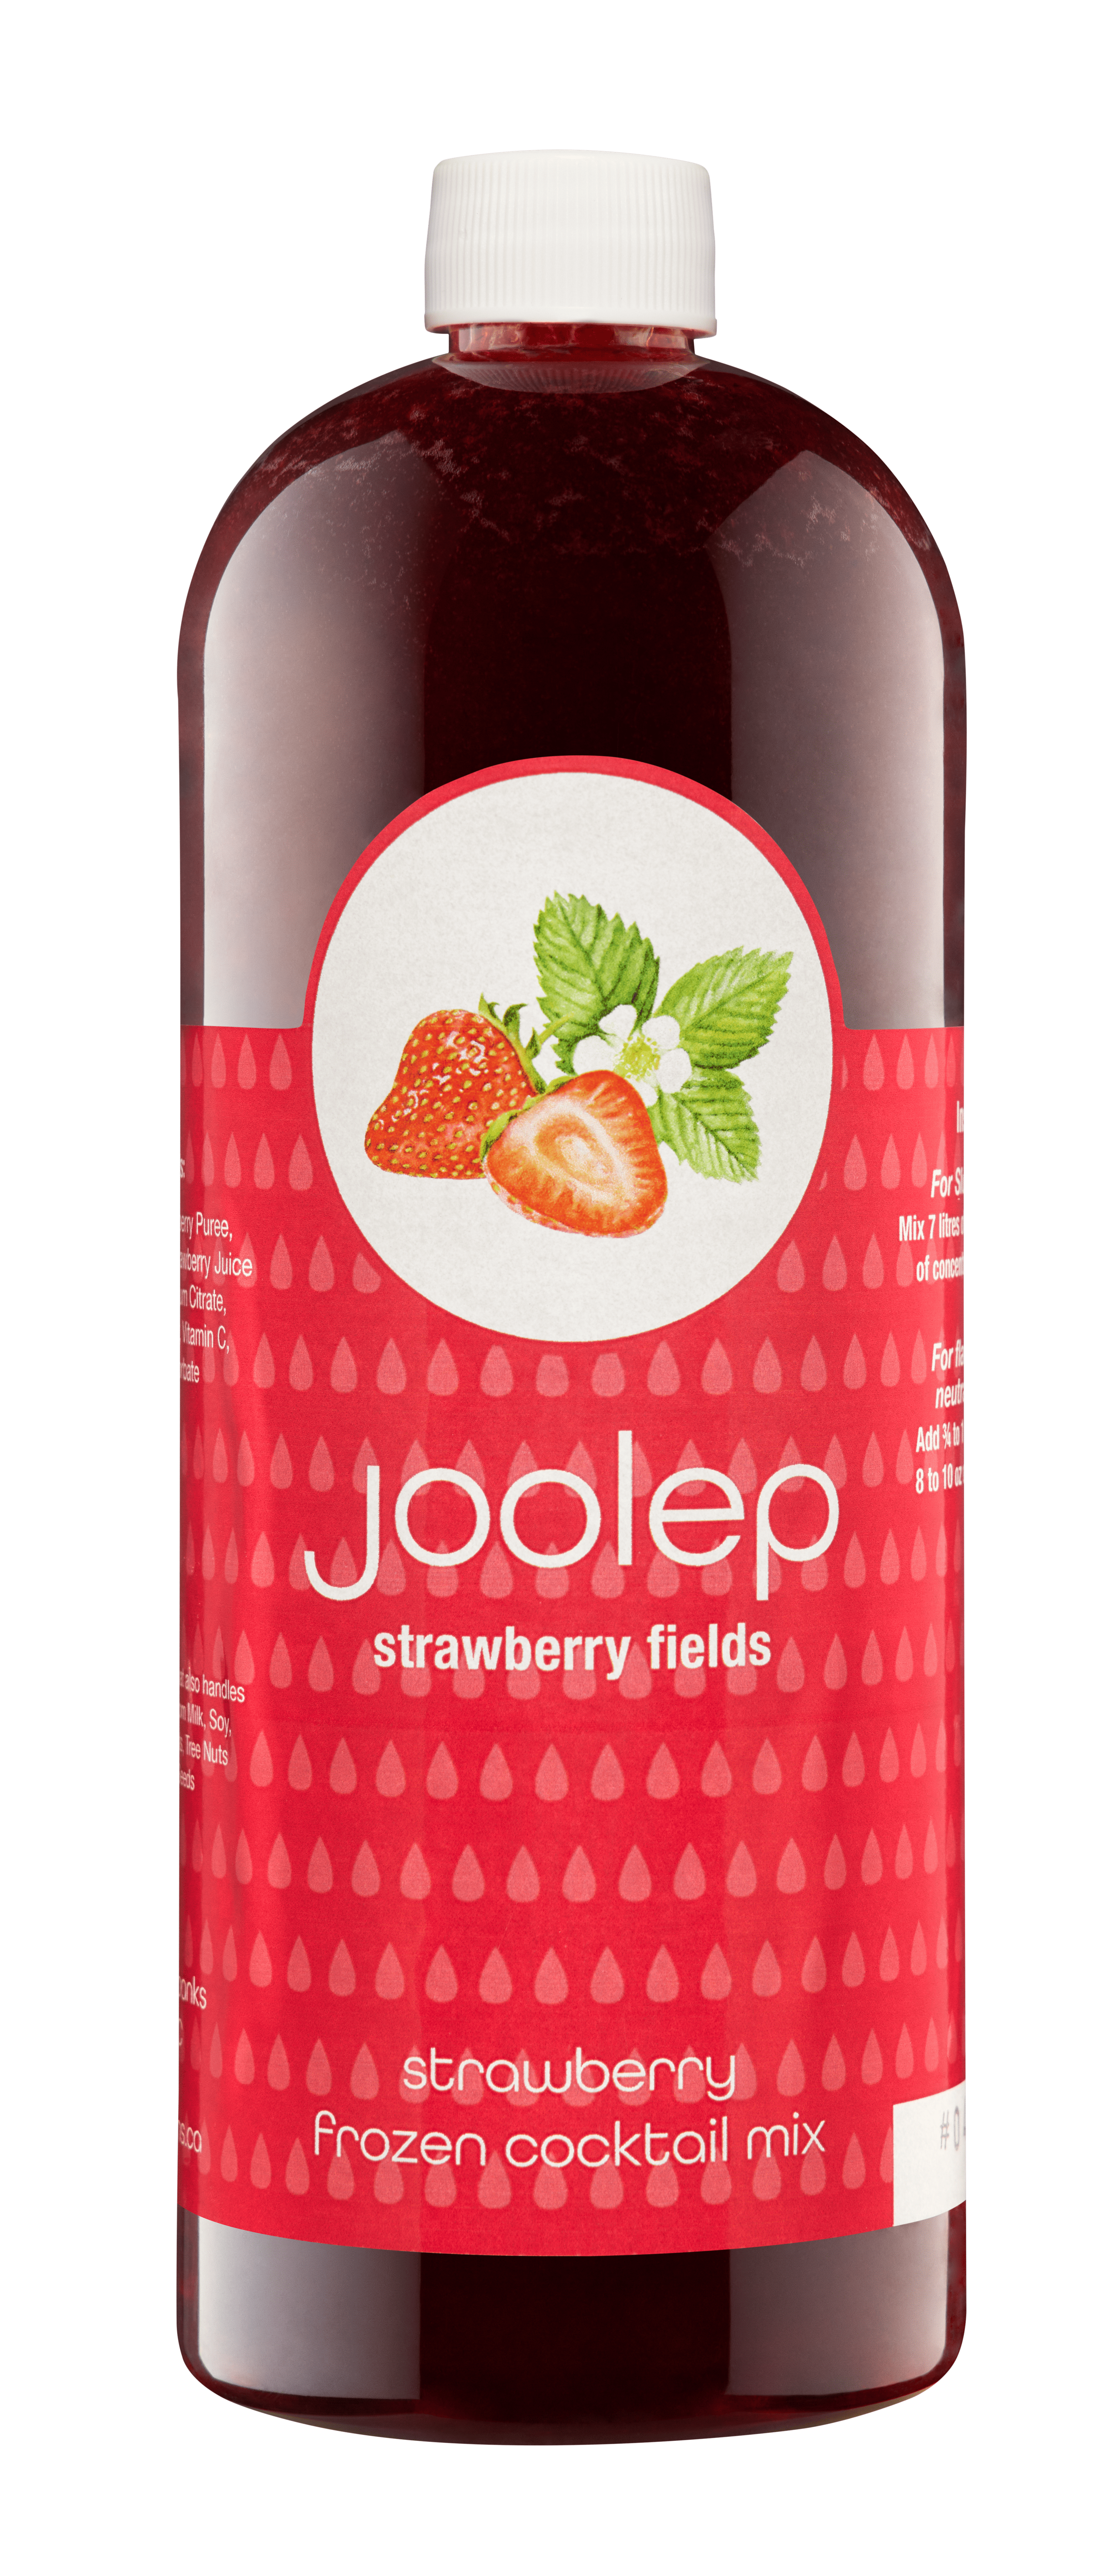 Joolep Cocktail Mix - Strawberry Fields - 6x1L - Item#13305